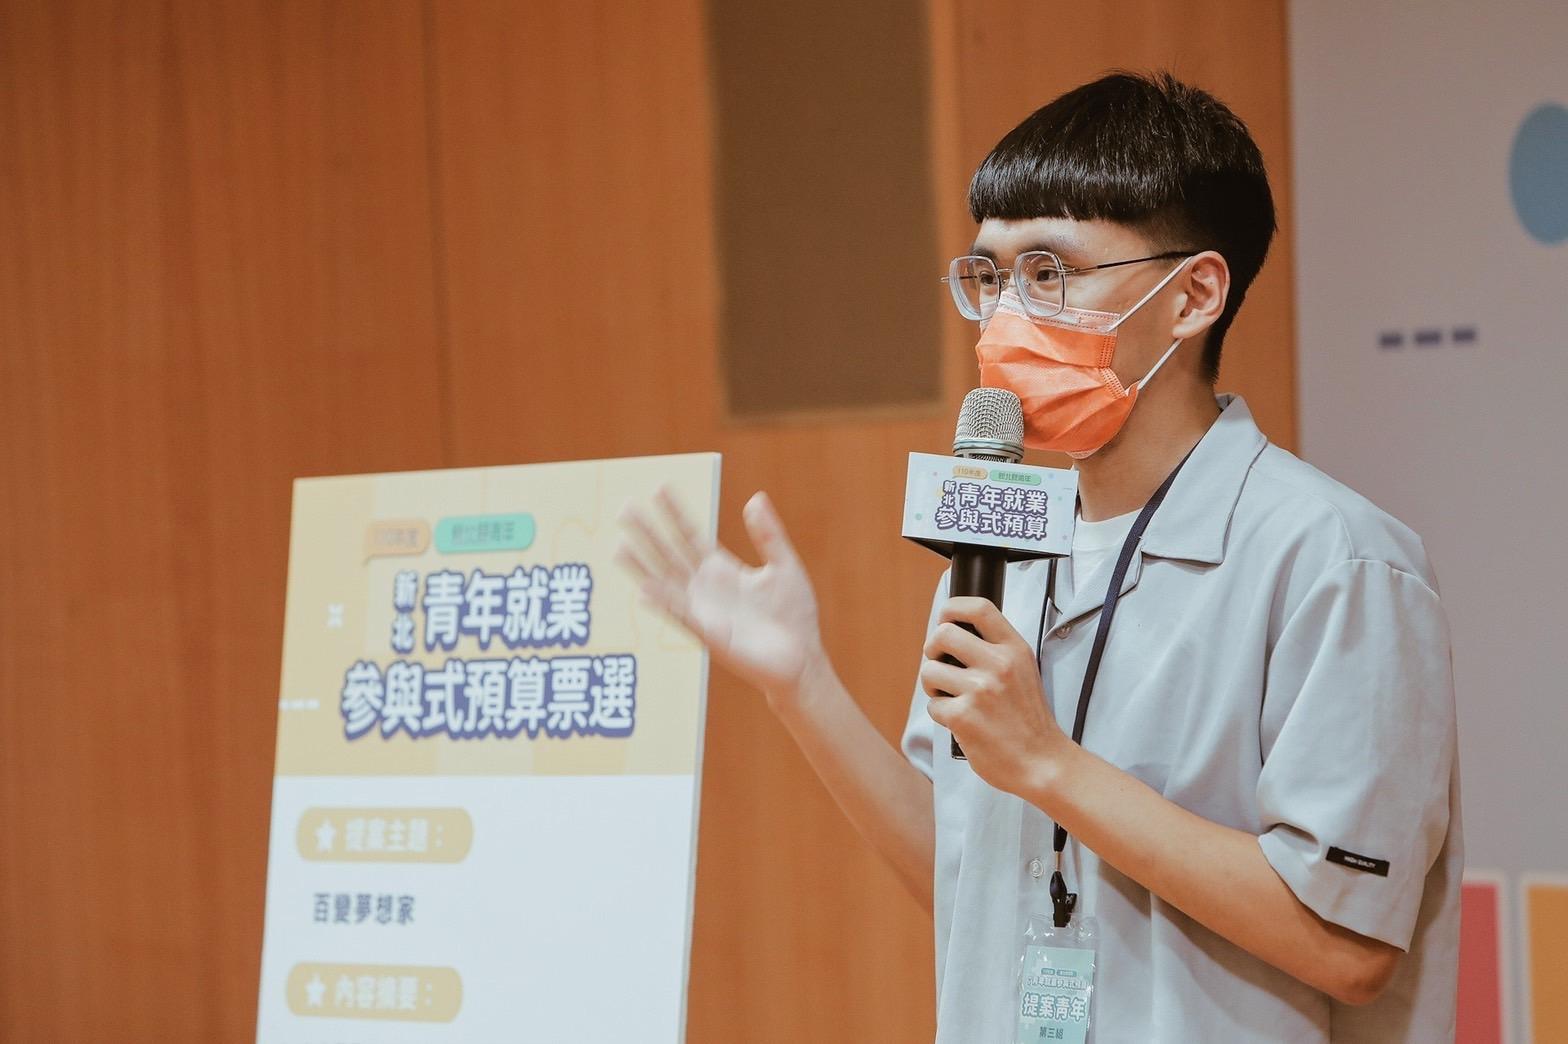 政大公共行政學系學生陳彥宇針對提案主題百變夢想家進行說明將在新北vote進行